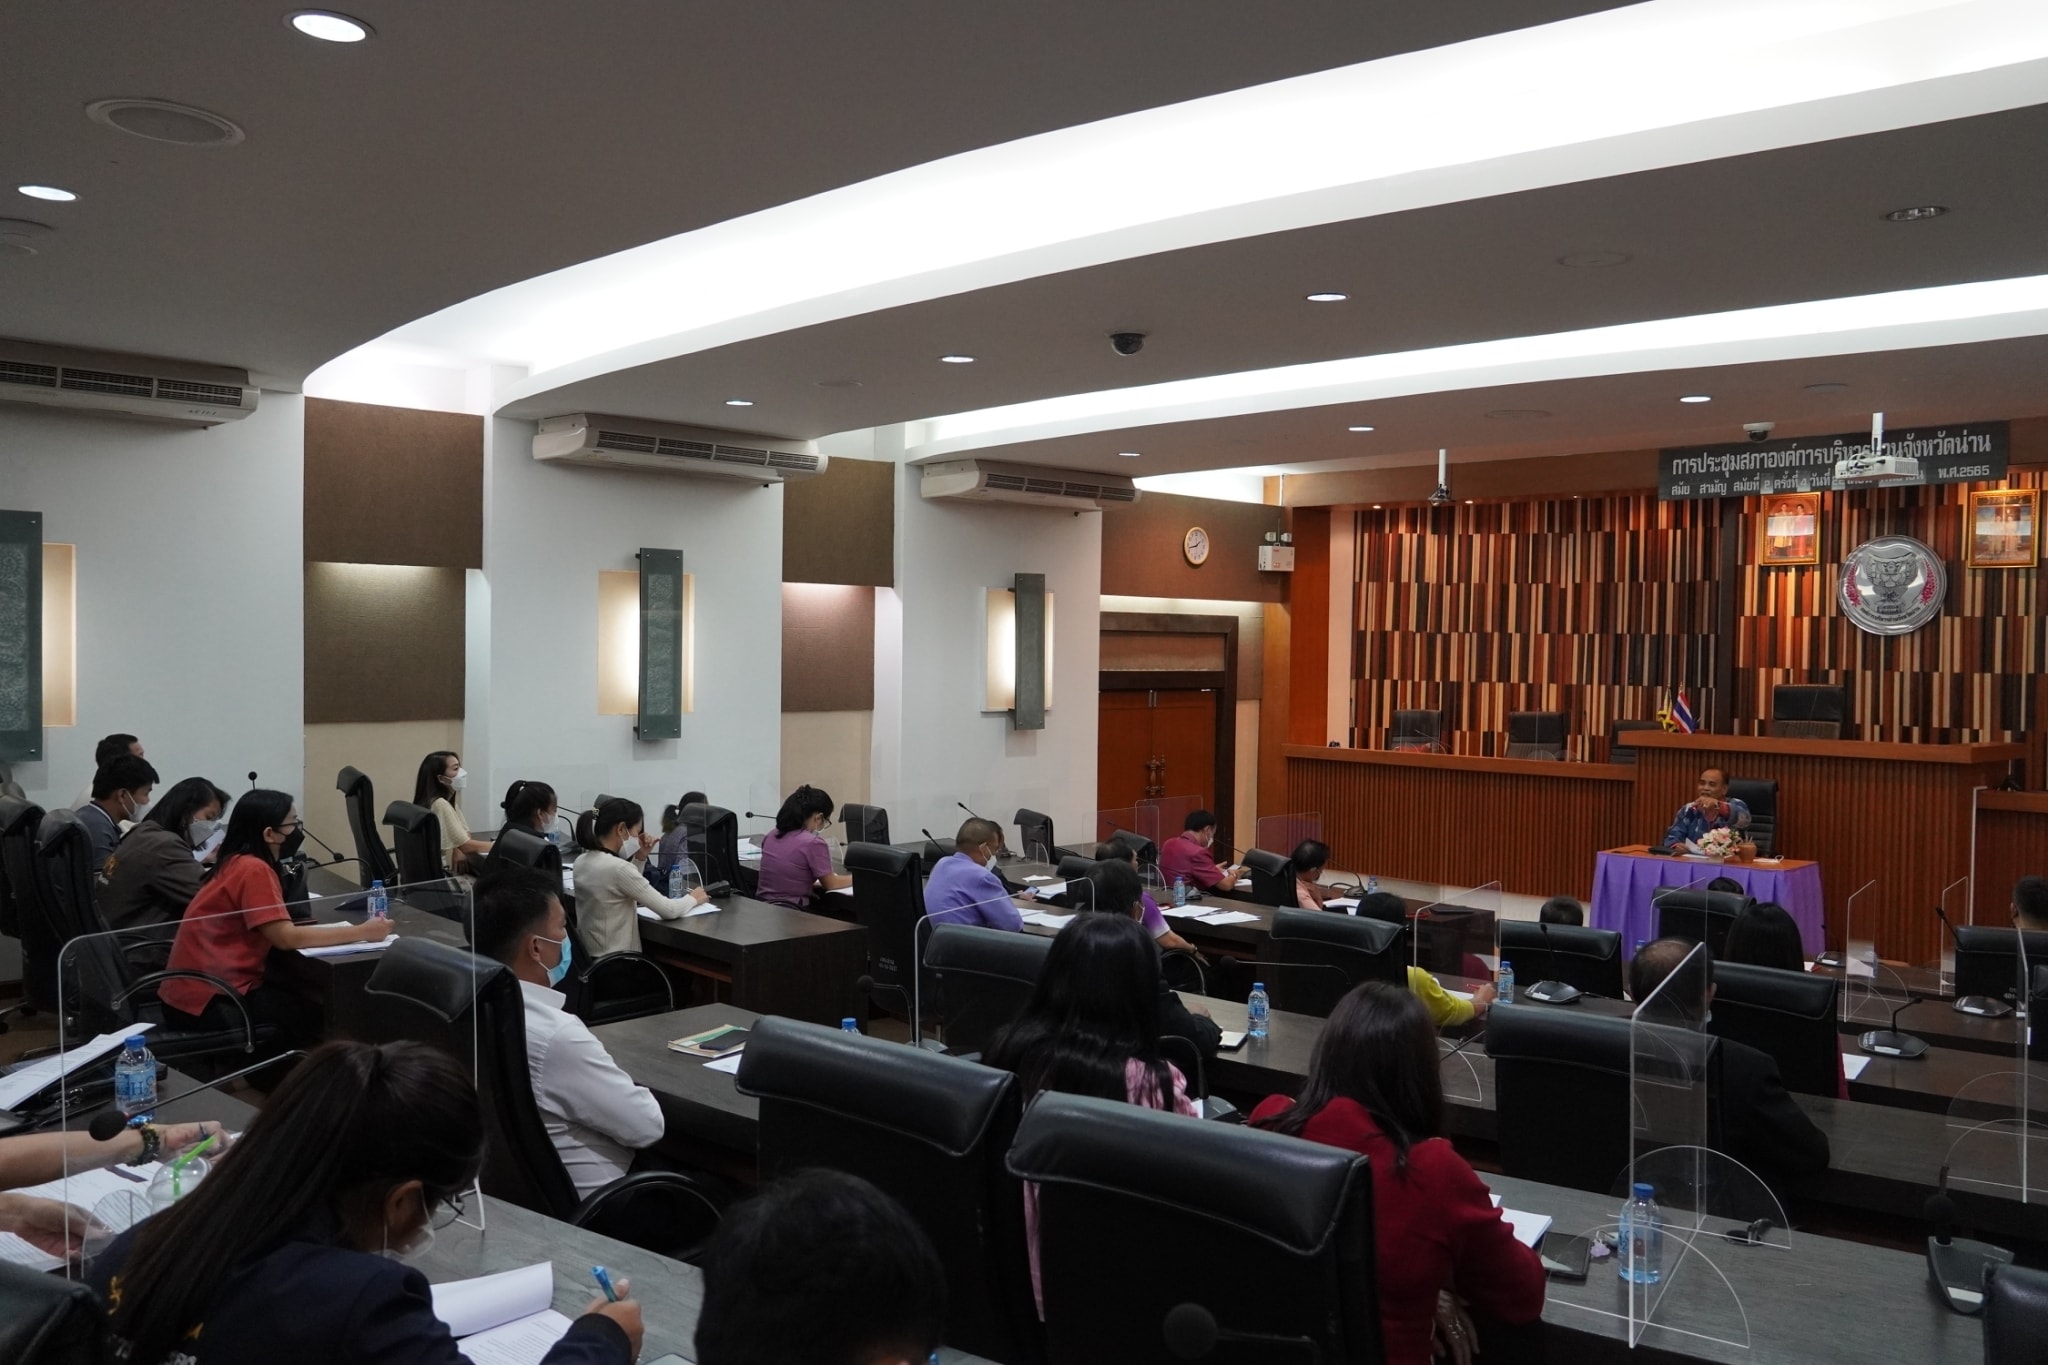 การประชุมซักซ้อมแนวทางปฏิบัติตามระเบียบกระทรวงมหาดไทย ว่าด้วยเงินอุดหนุนขององค์กรปกครองส่วนท้องถิ่น ครั้งที่ 1/2565 ณ ห้องประชุมสภาองค์การบริหารส่วนจังหวัดน่าน